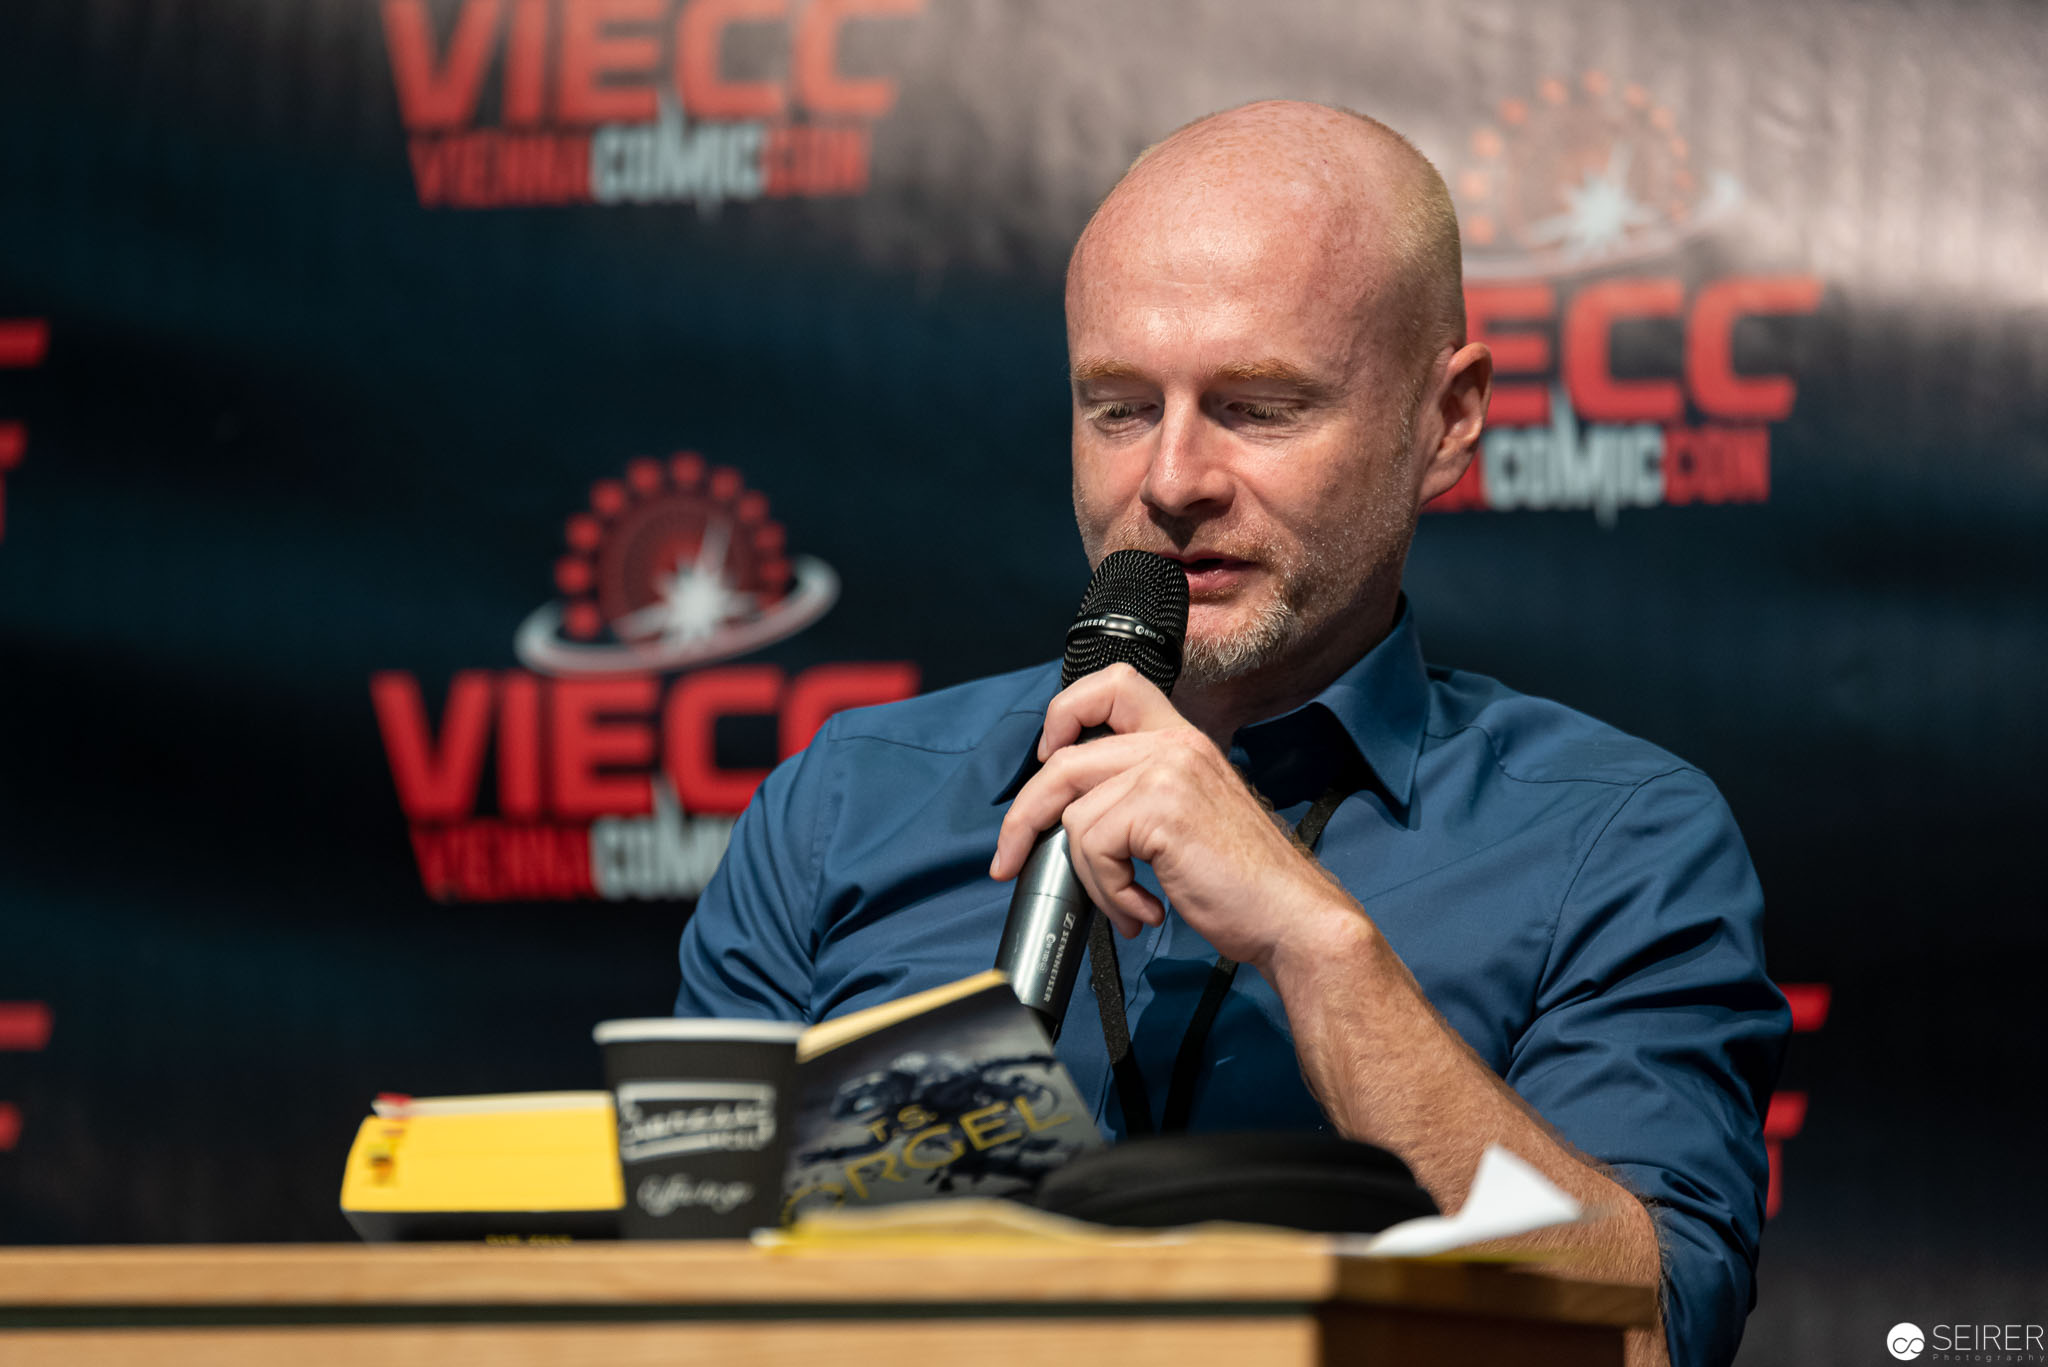 Vienna Comic Con 2019 #viecc